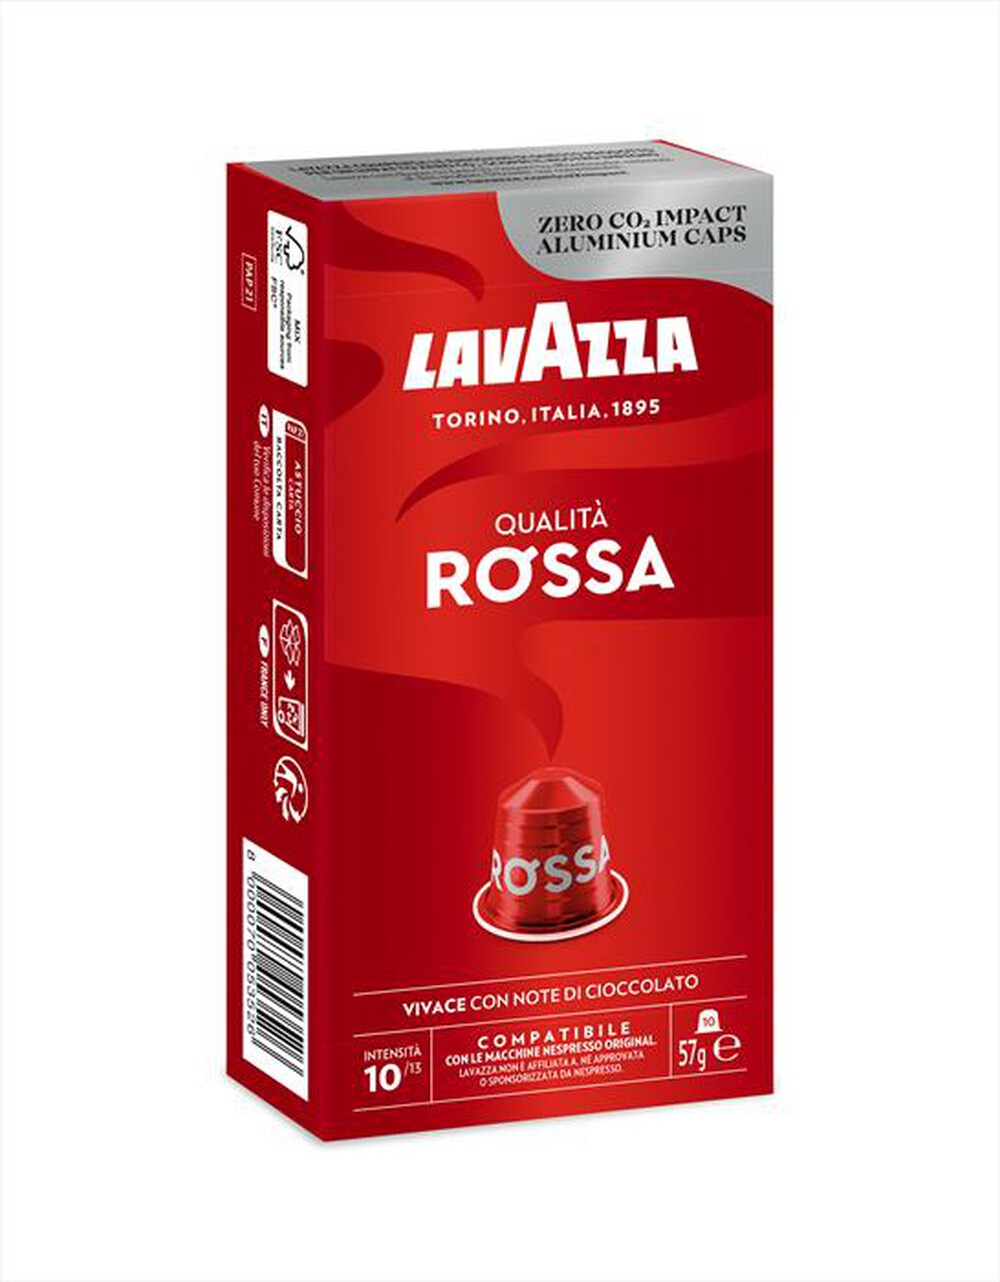 "LAVAZZA - Qualità Rossa - 10 caps-Rosso"